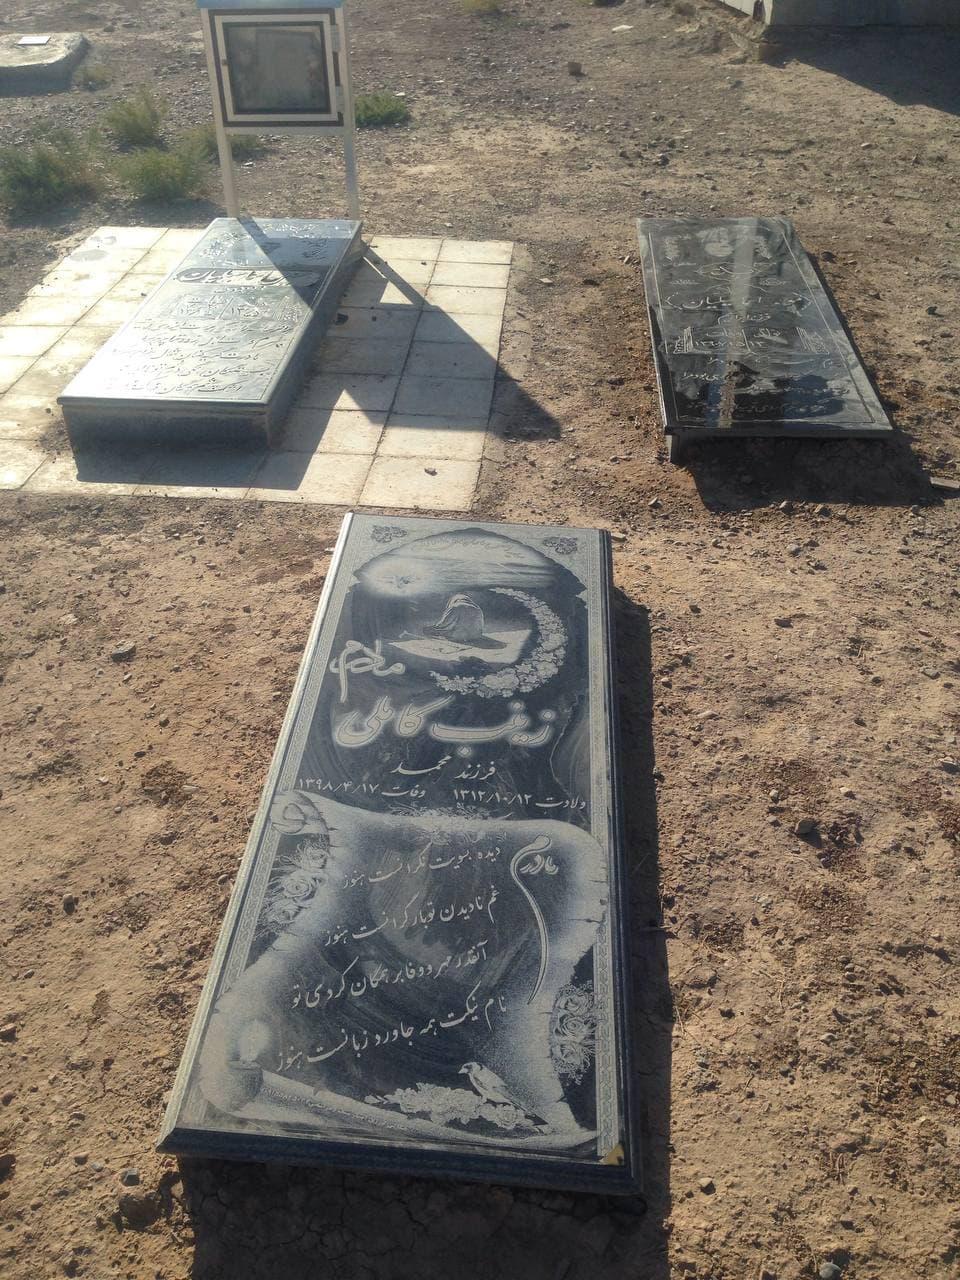 یادبود شادروانان موسی و حسین اسماعیلیان و زینب کاملی (درگذشتگان خانواده اسماعیلیان)